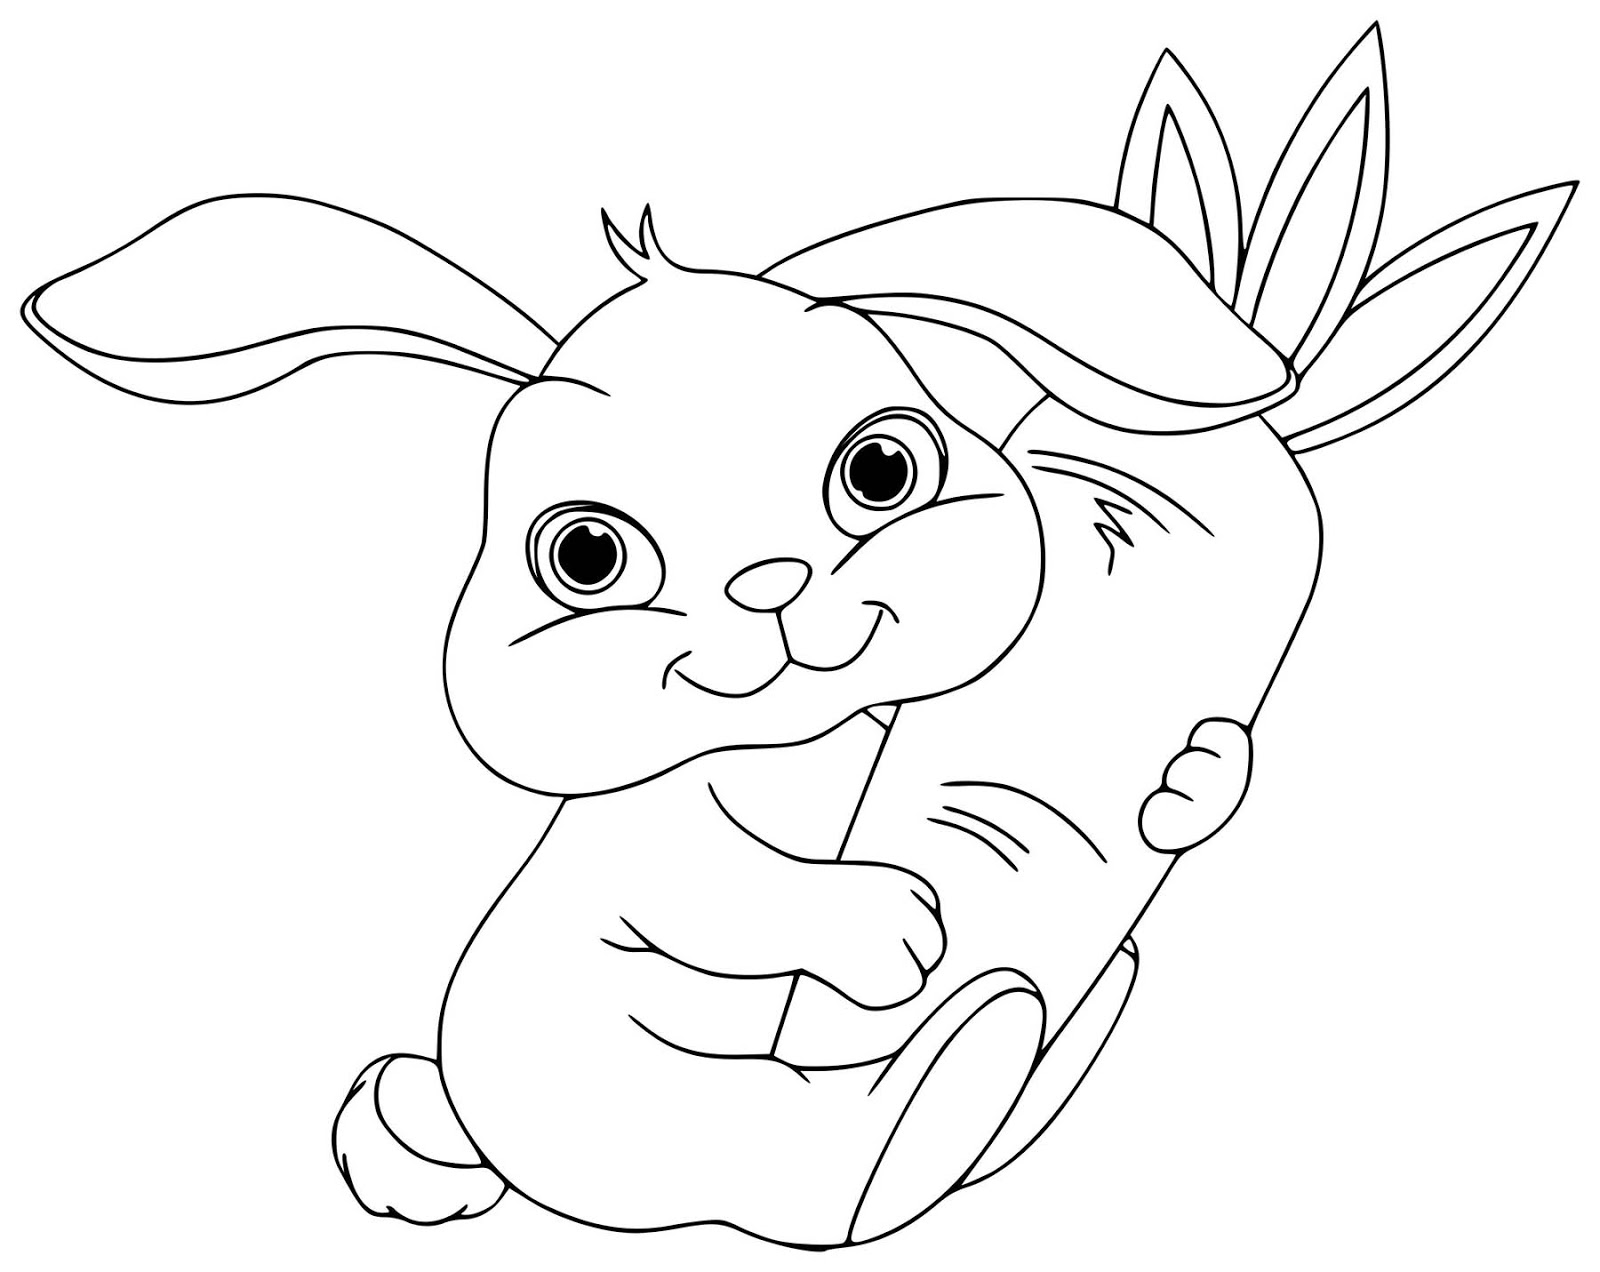 Hình vẽ thỏ: Bạn yêu thích những hình vẽ dễ thương và đáng yêu? Hãy xem ngay hình vẽ thỏ đáng yêu này để cảm nhận được sự tuyệt vời của nghệ thuật.